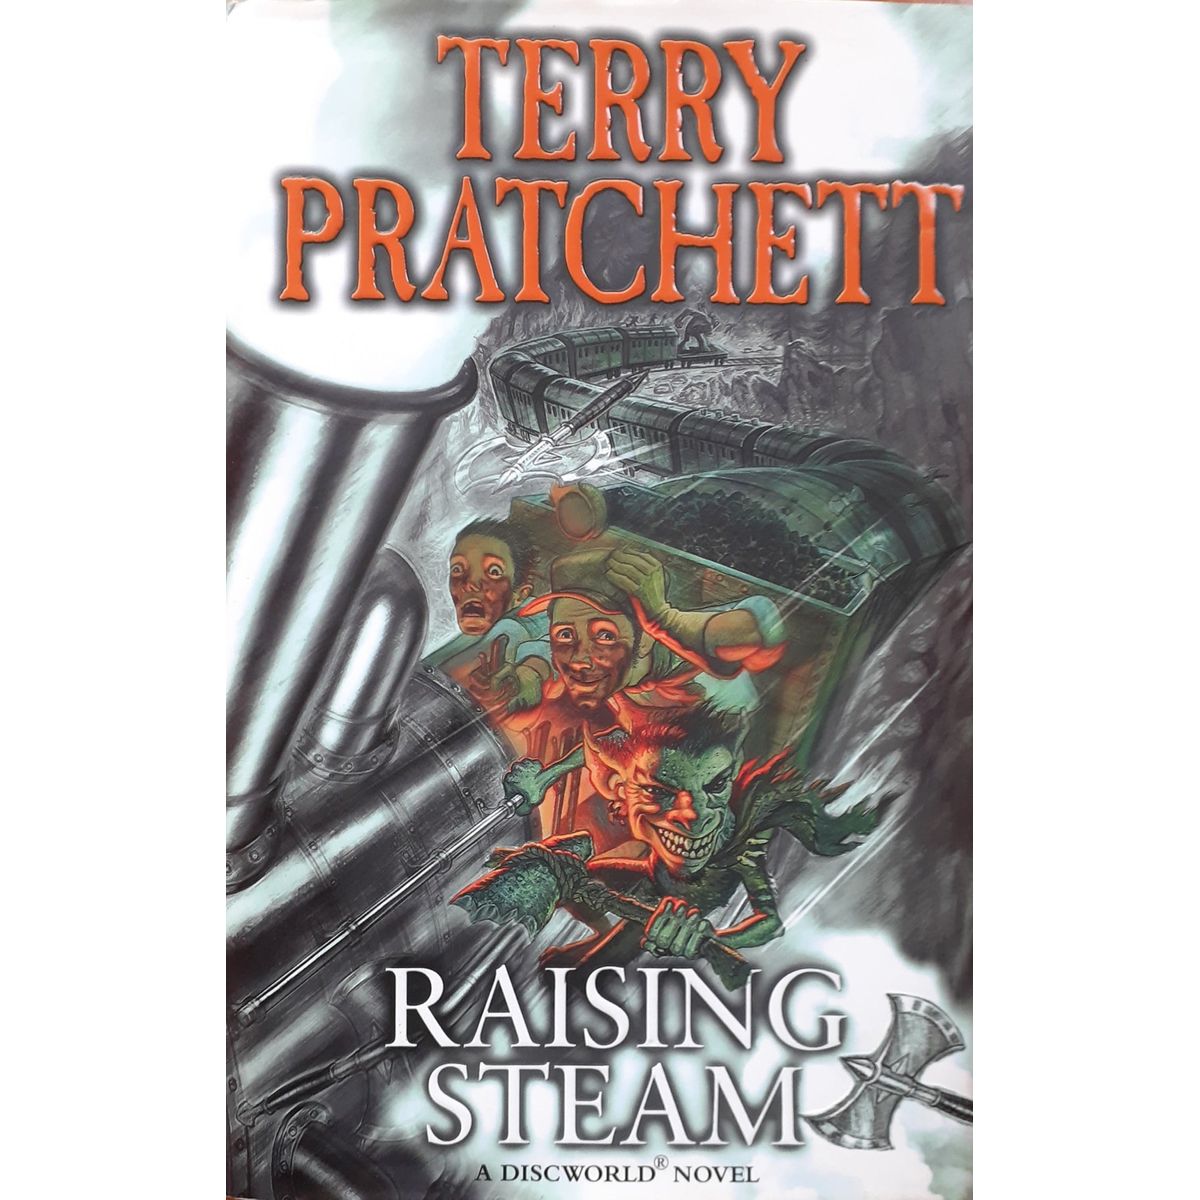 ISBN: 9780857522276 / 0857522272 - Raising Steam: A Discworld Novel by Terry Pratchett [2013]